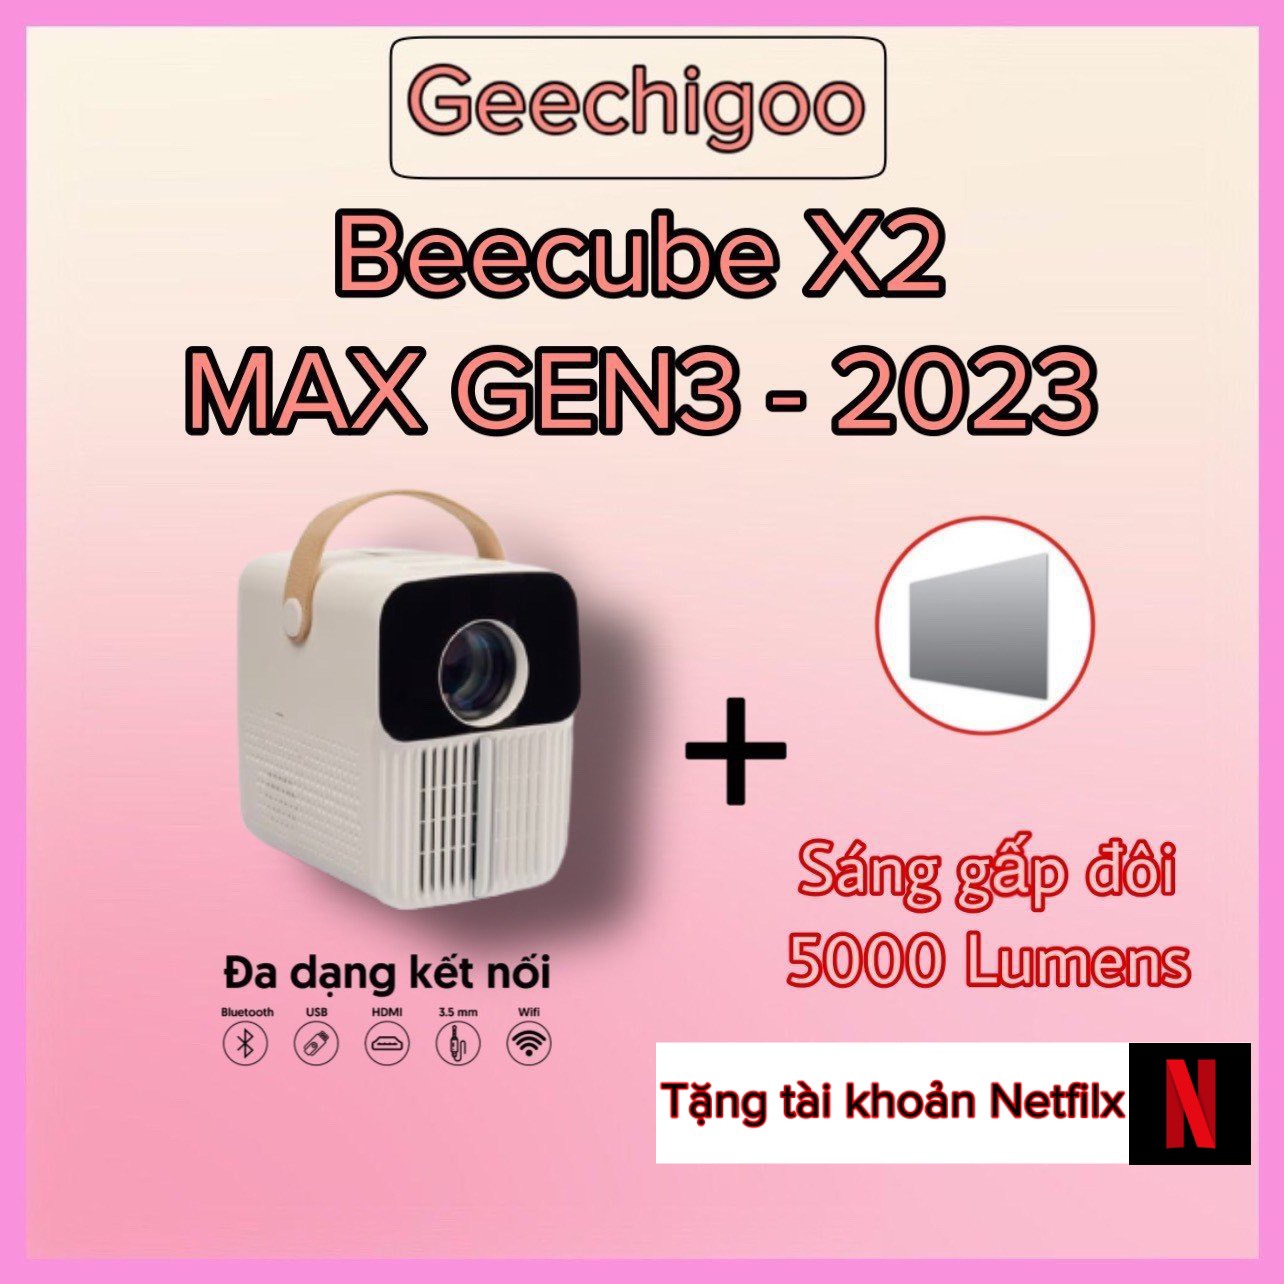 [Trả góp 0%] Máy Chiếu Beecube X2 Max GEN 4 Full HD Combo Quà Tặng Giảm Giá (Tặng Cap HDMI tặng kèm giá đỡ máy chiếu )